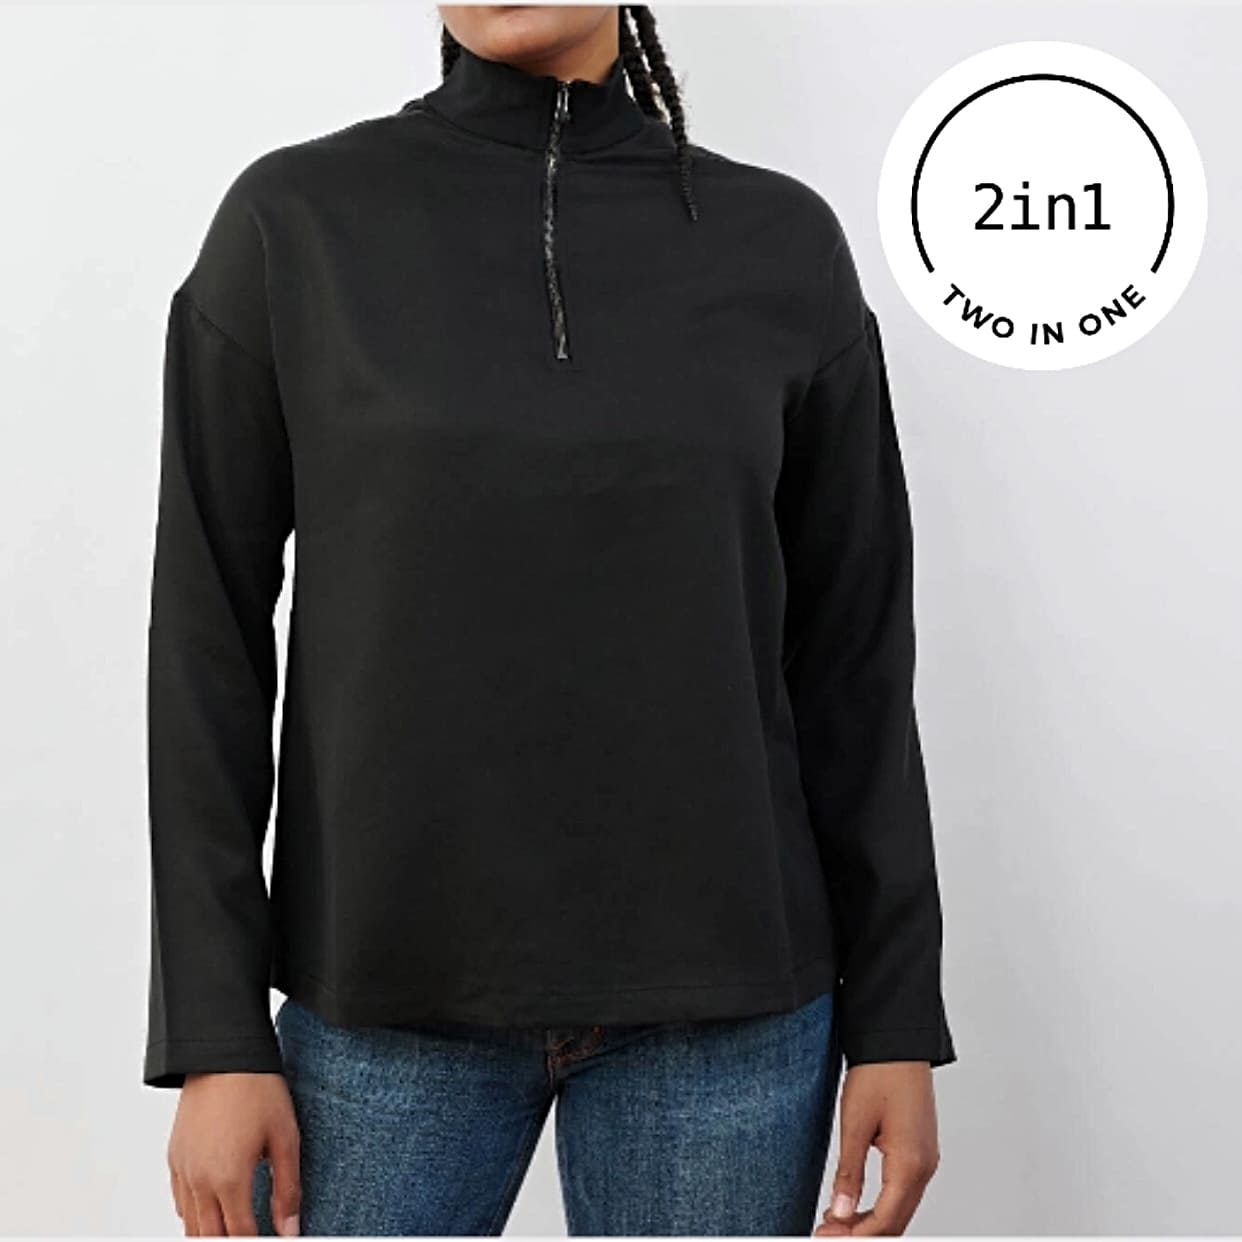 Schwarze 2IN1-Bluse mit Reißverschluss an Frauenkörper mit weißem rundem 2IN1-Icon